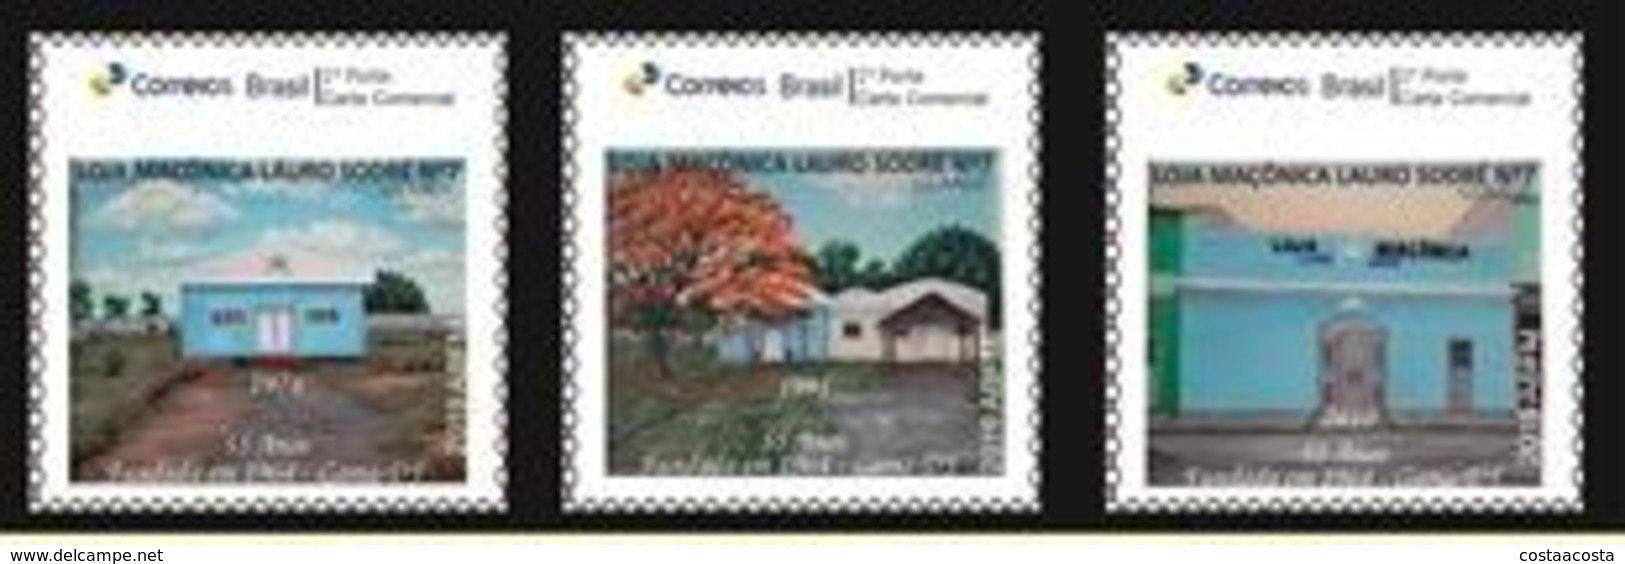 Brazil -   55 Years Masonic Lodge Lauro Sodré - Set 3 - Freemasonry